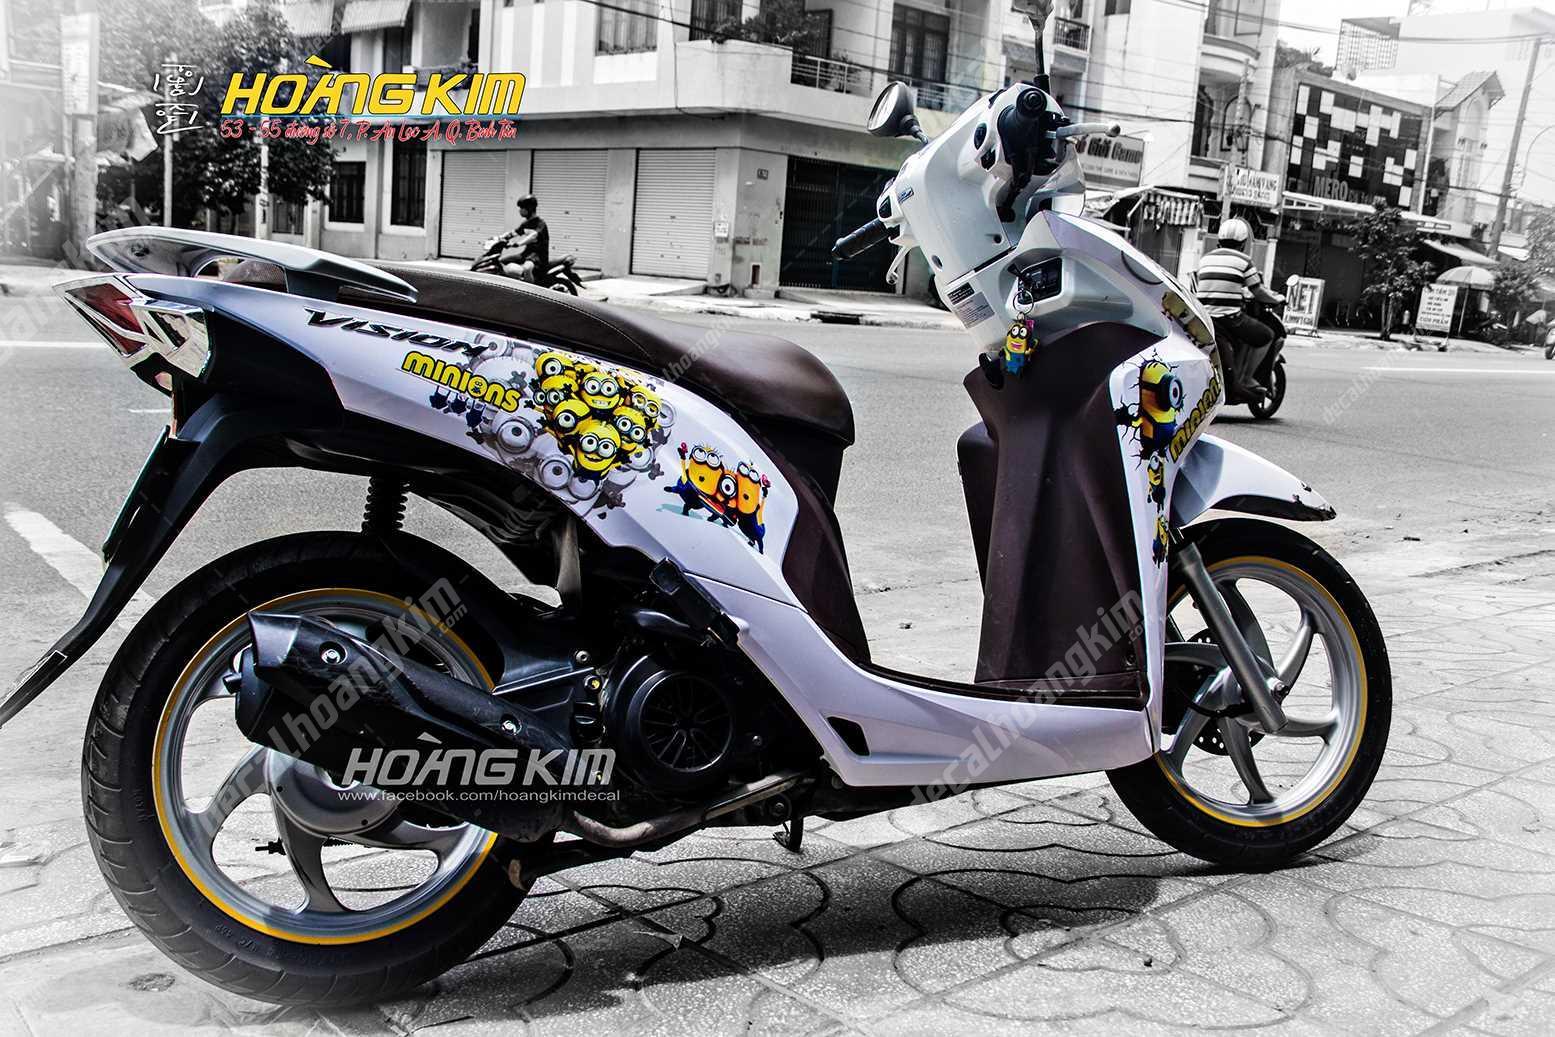 Ra mắt Honda Scoopy Minion ngộ nghĩnh dành riêng cho thị trường Thái Lan